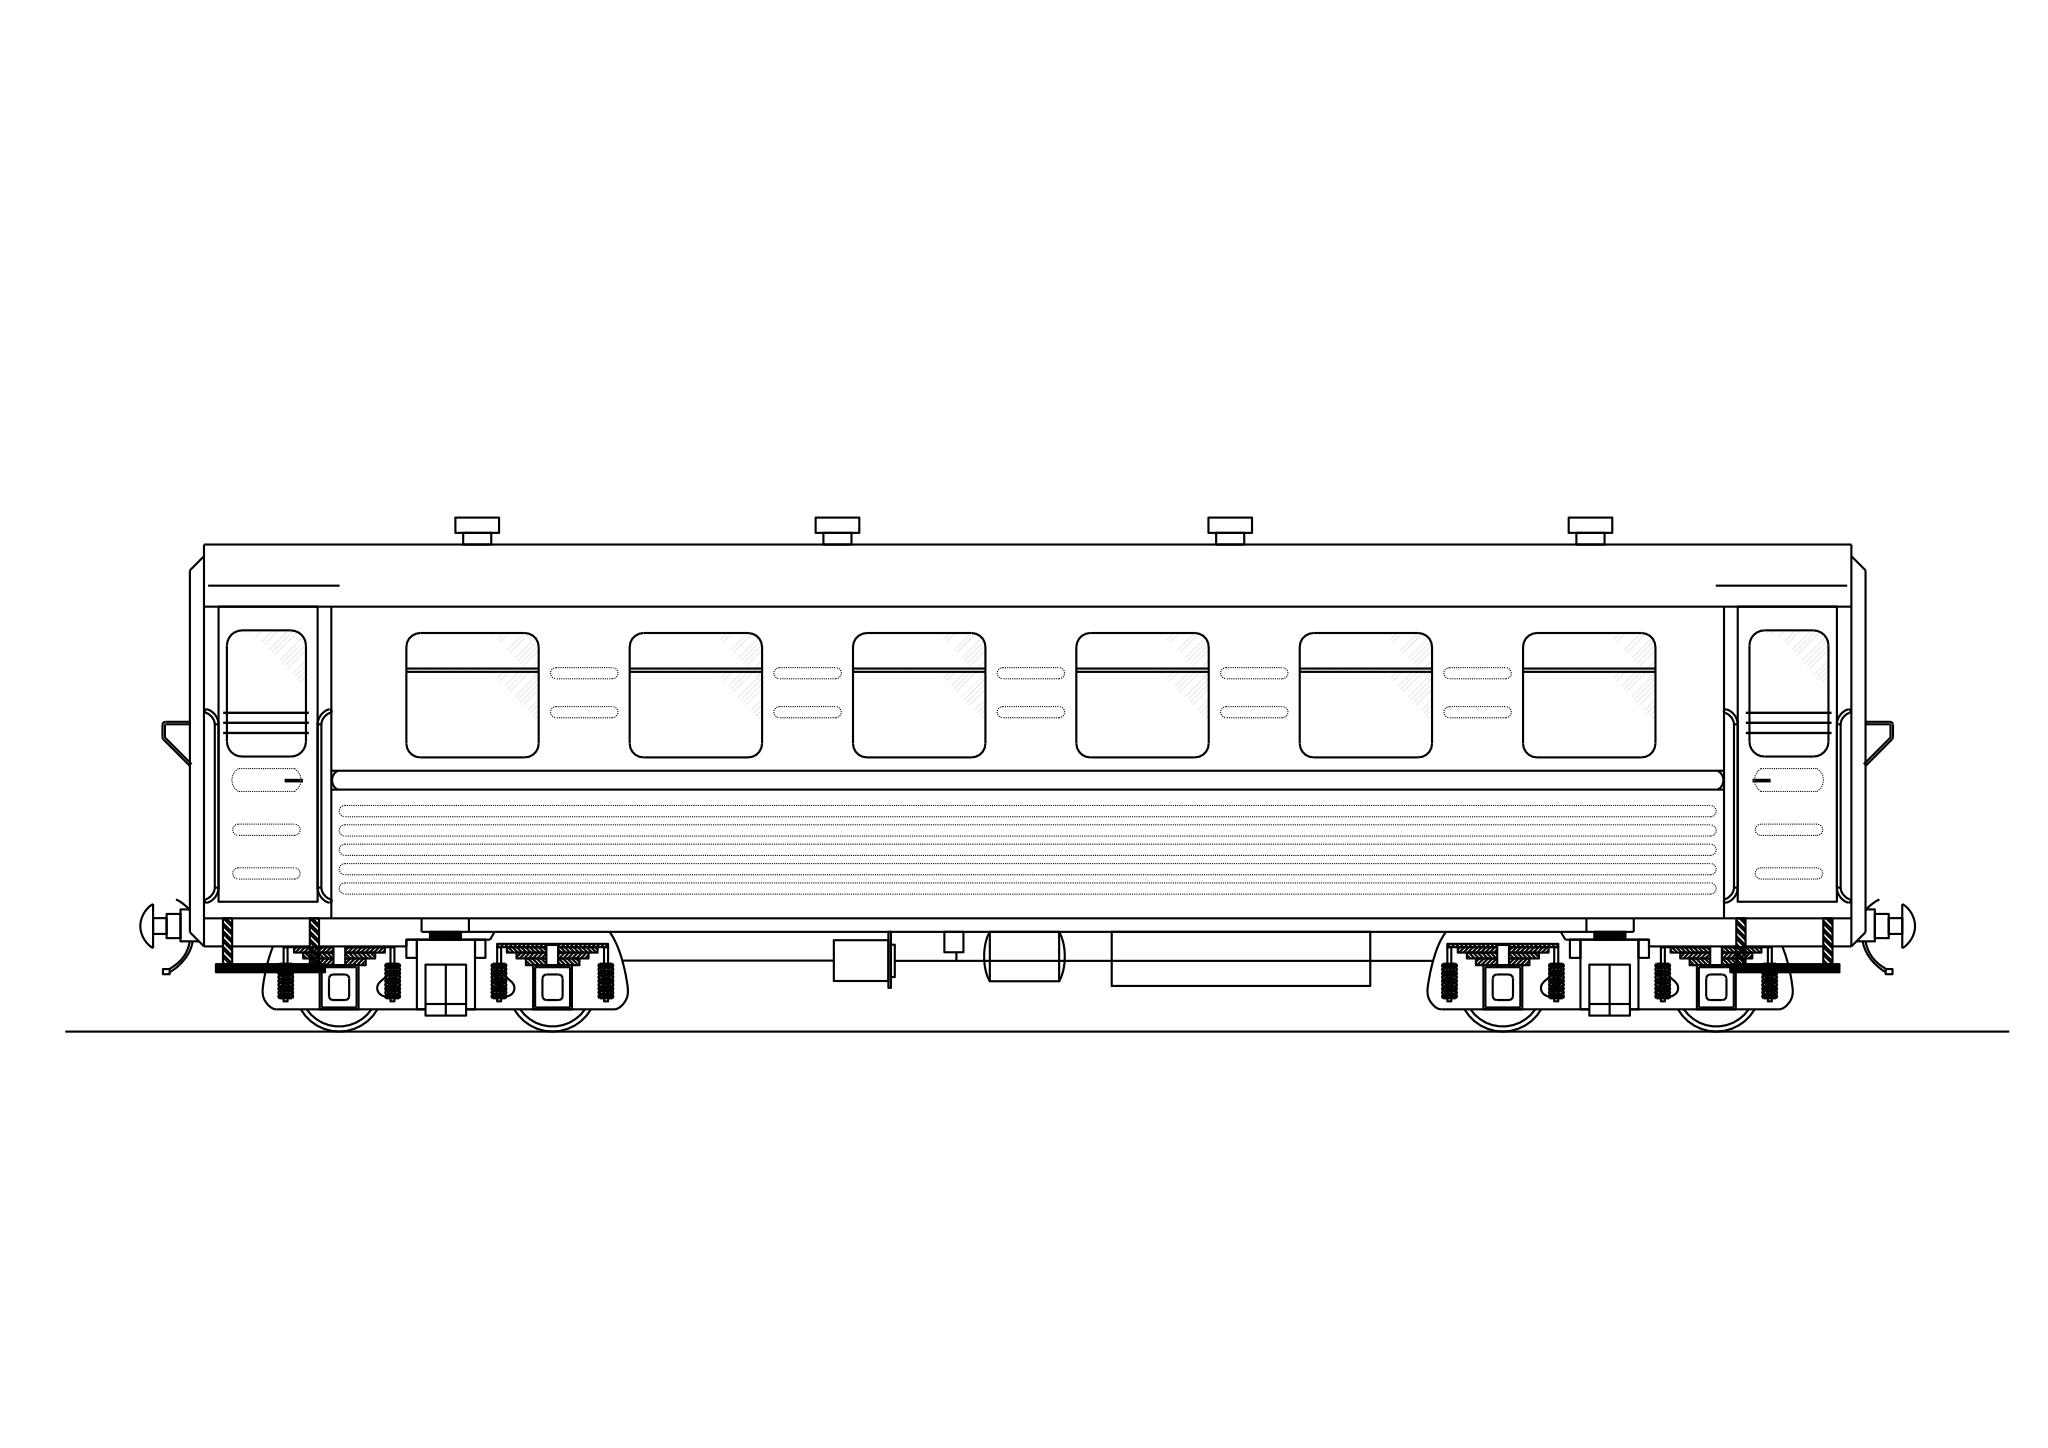 ПВ 40 схема вагона